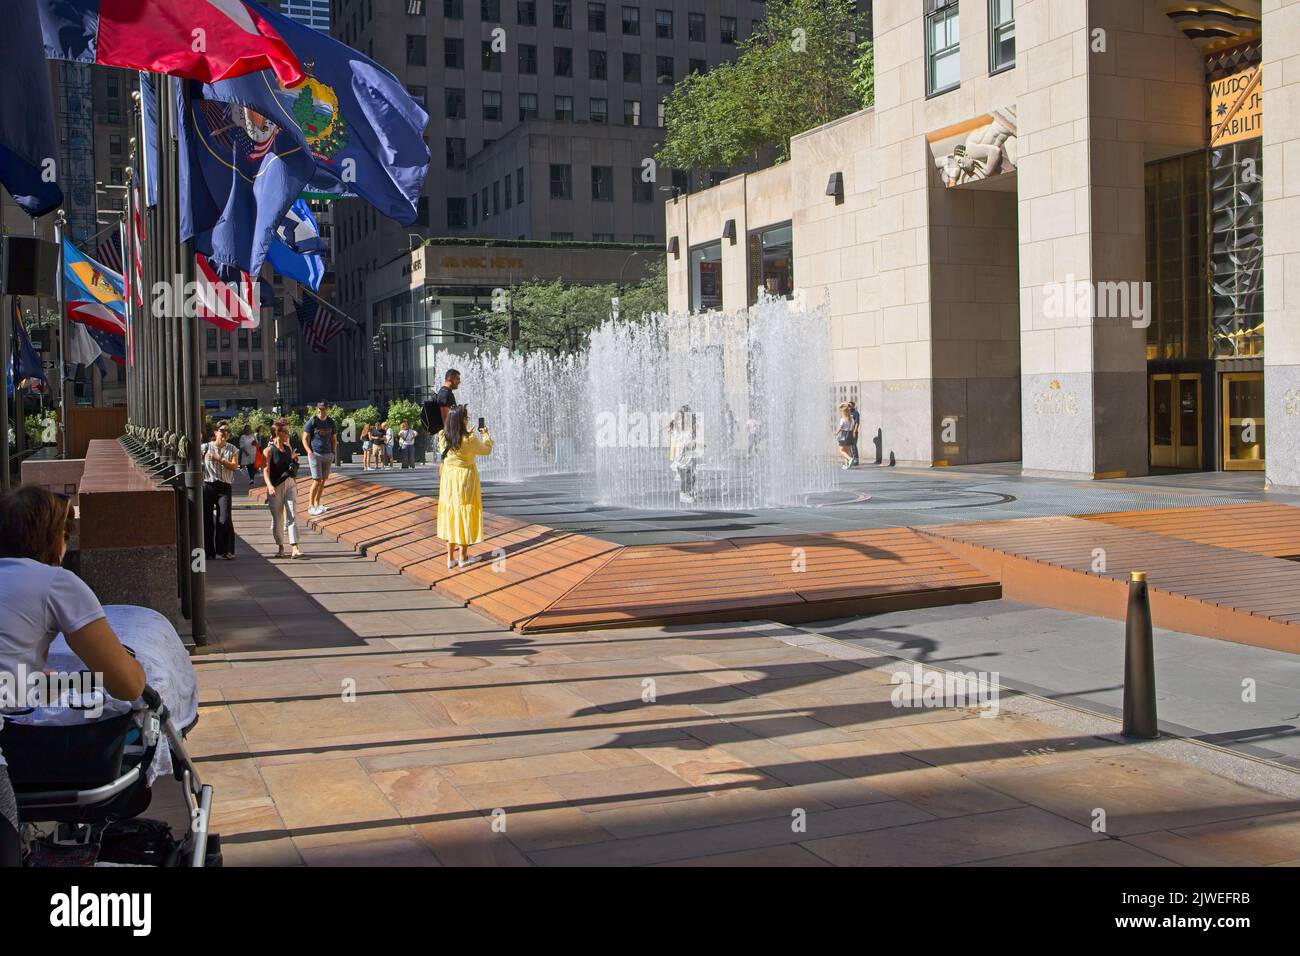 New York, NY, USA - 5 sept, 2022: Rockefeller Center fontaine vous permet de rester au sec si vous entrez et tenez toujours dans un instant quand la fontaine disa Banque D'Images